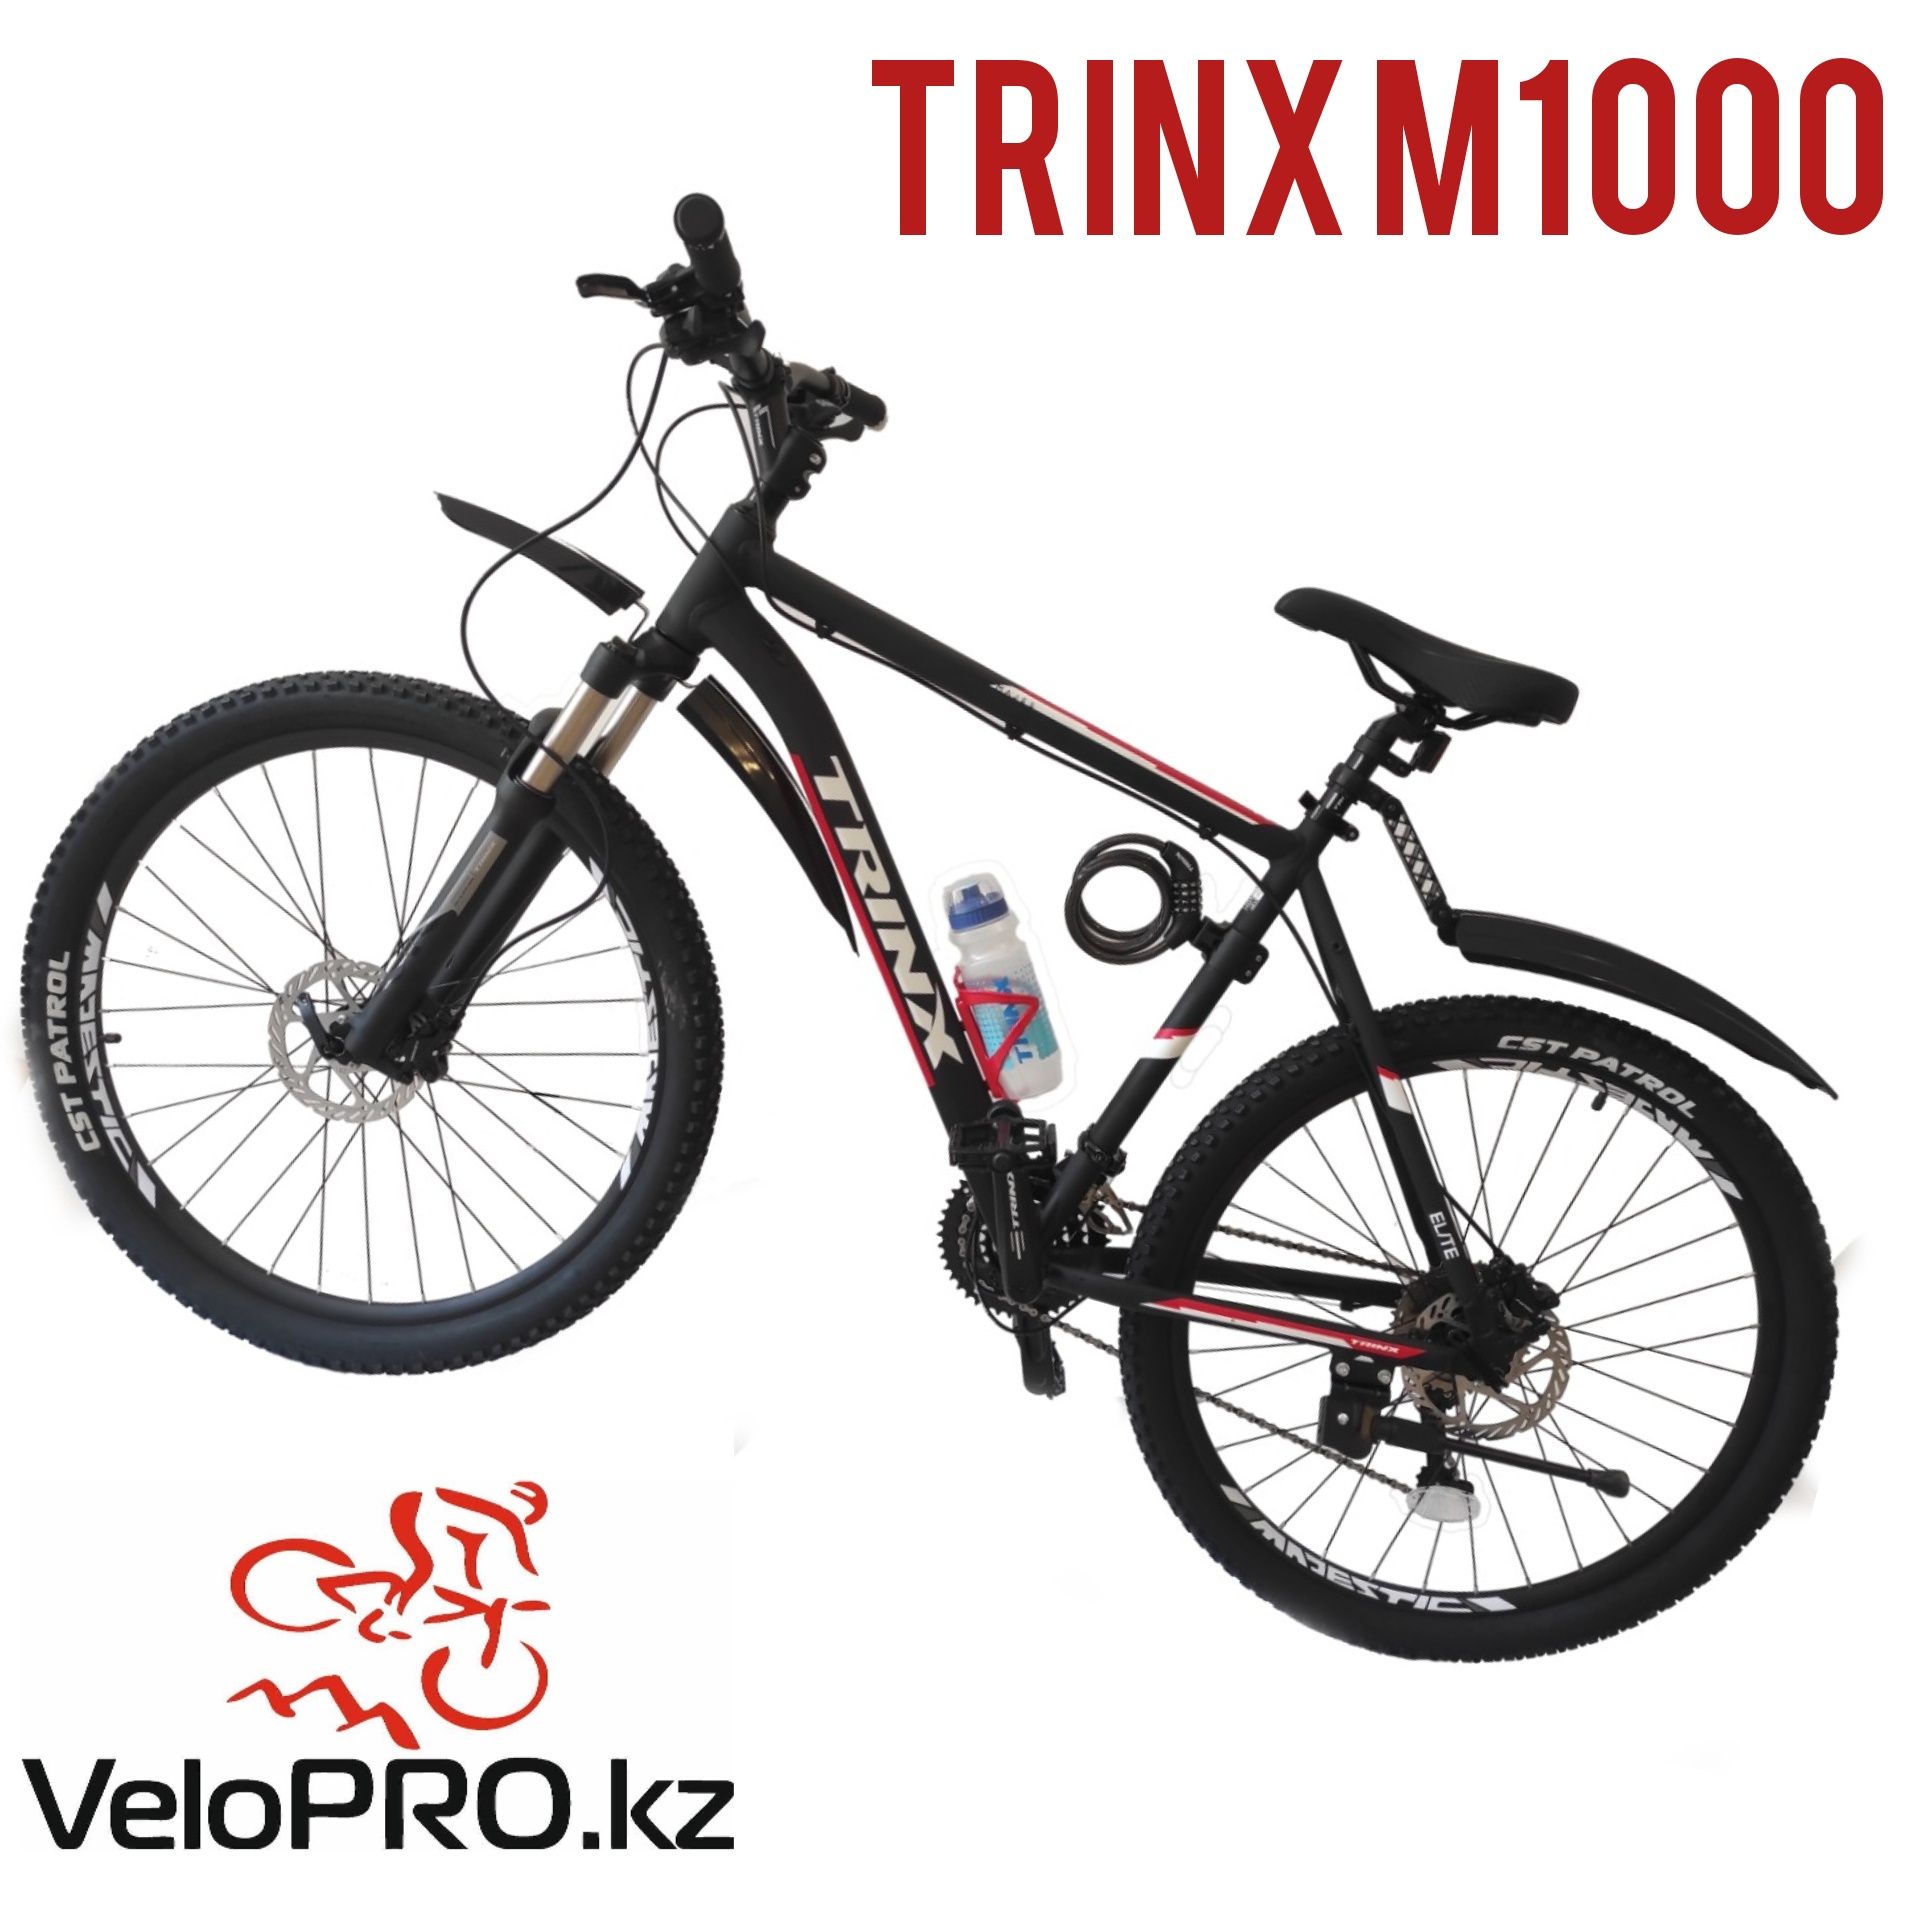 Велосипед Trinx m1000. Рама 16, 19,21. Колеса 26, 27.5, 29. Рассрочка